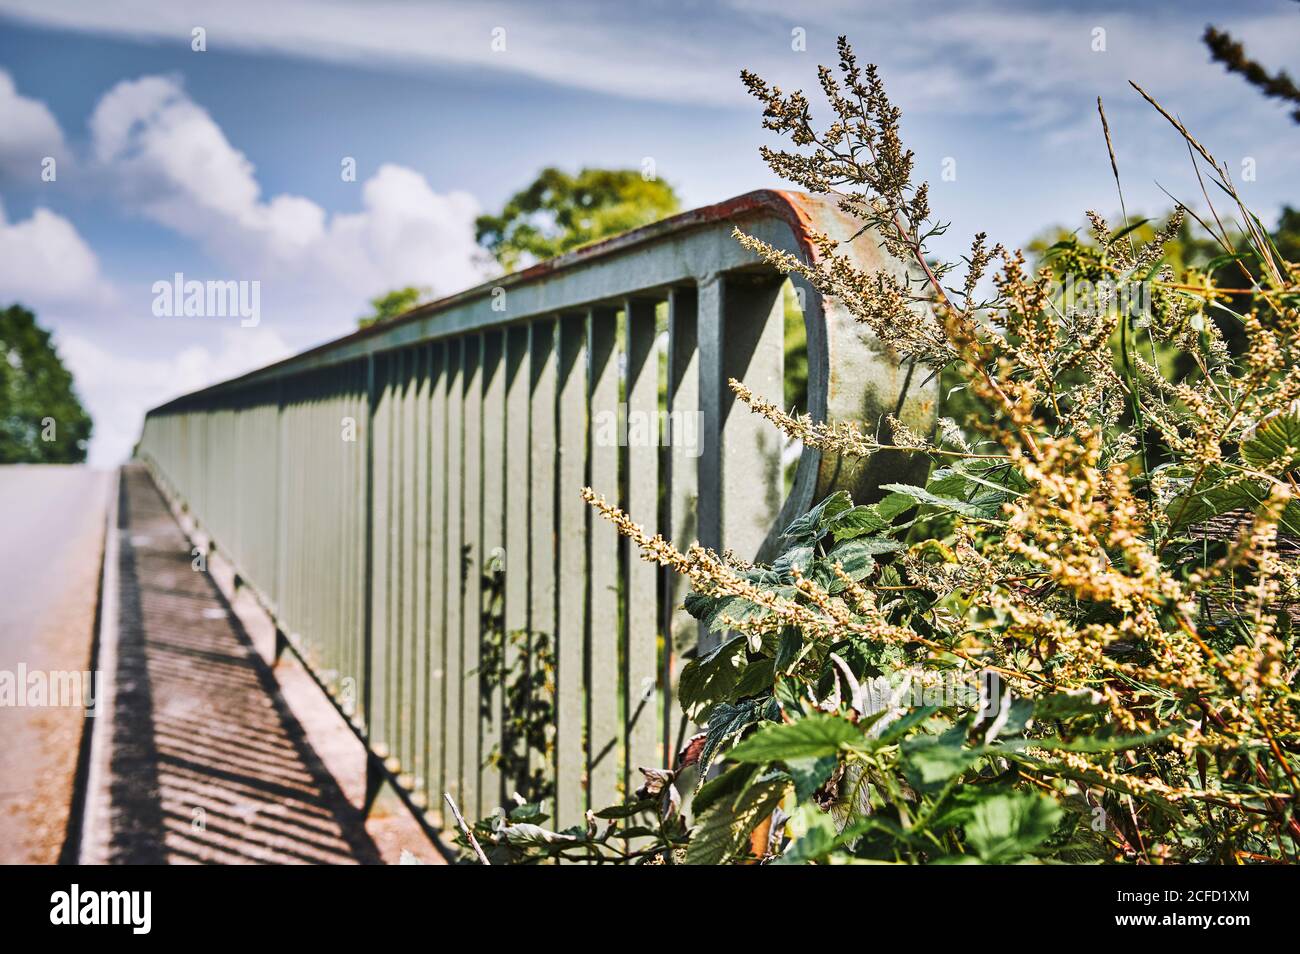 Immagine simbolica, ringhiere metalliche di un ponte danno la direzione, l'incertezza, le strutture diritte e organiche Foto Stock